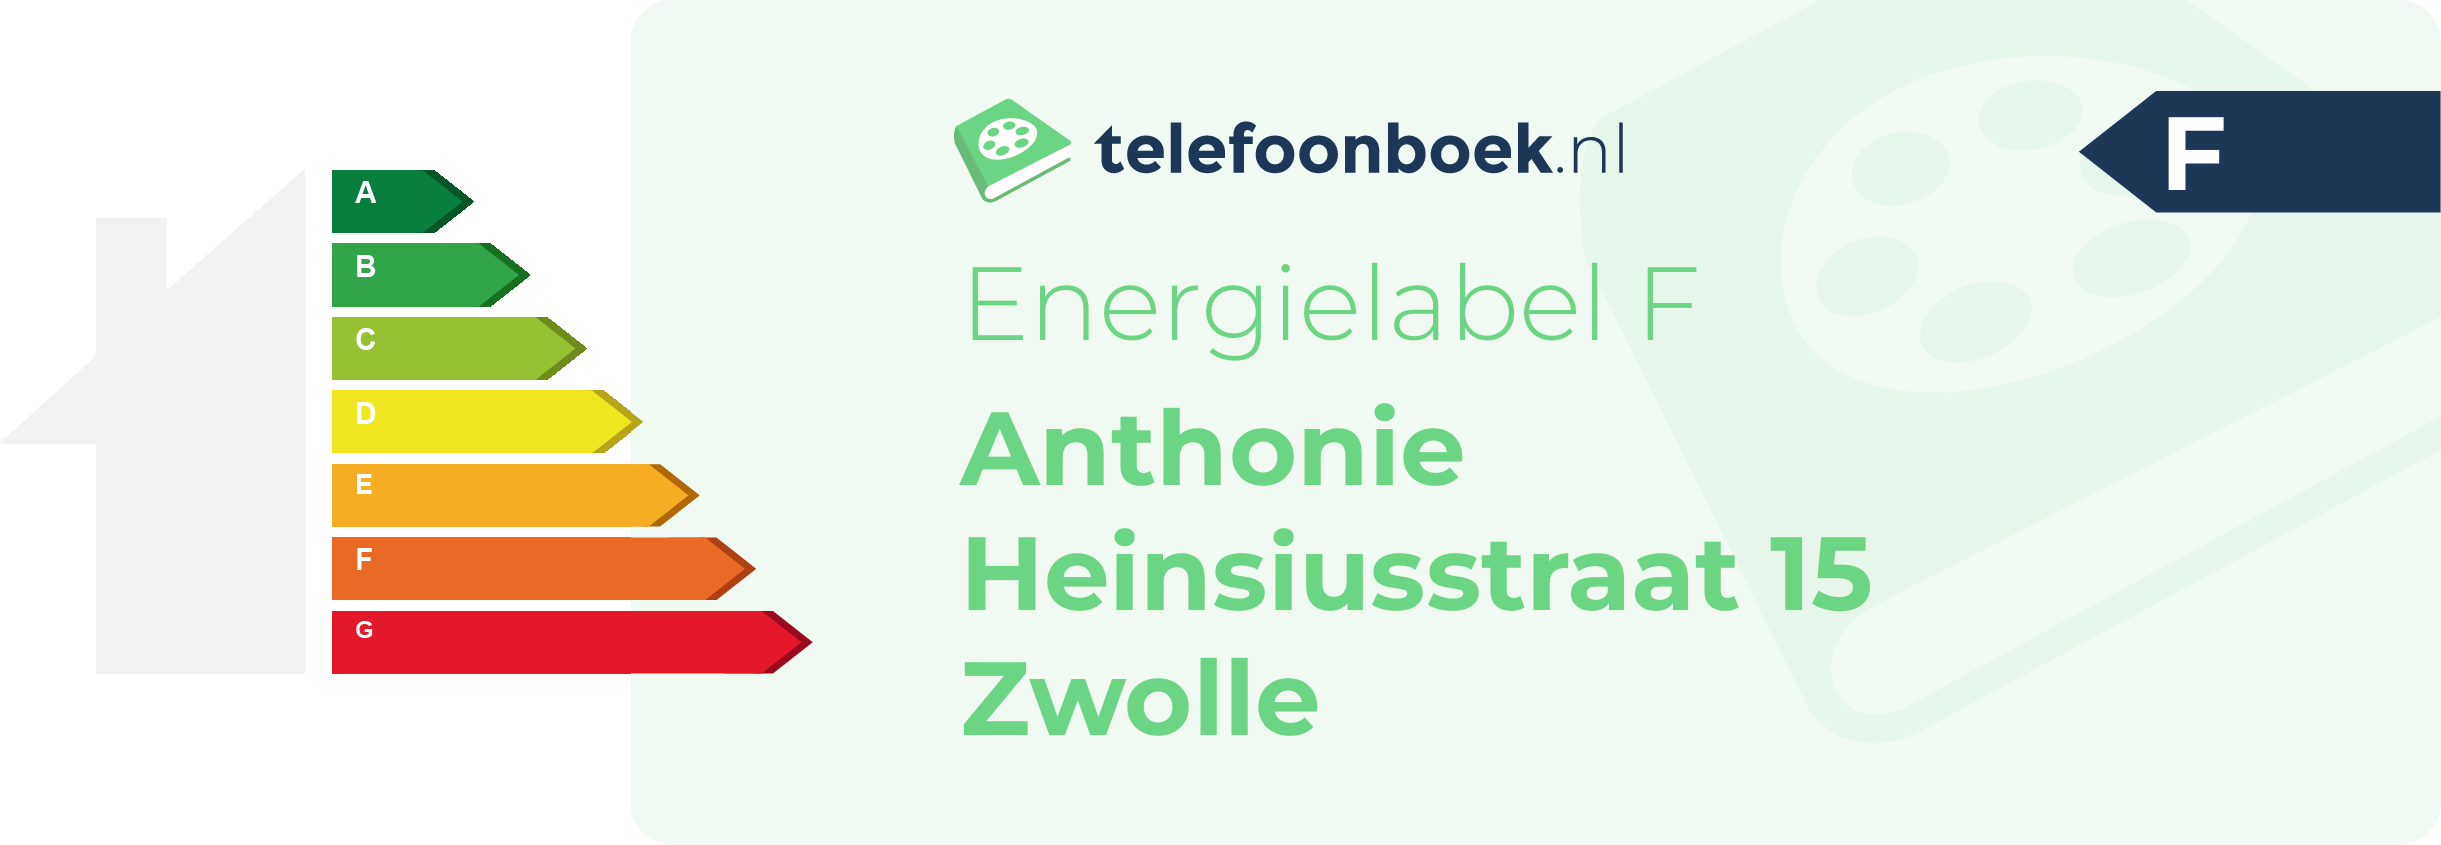 Energielabel Anthonie Heinsiusstraat 15 Zwolle